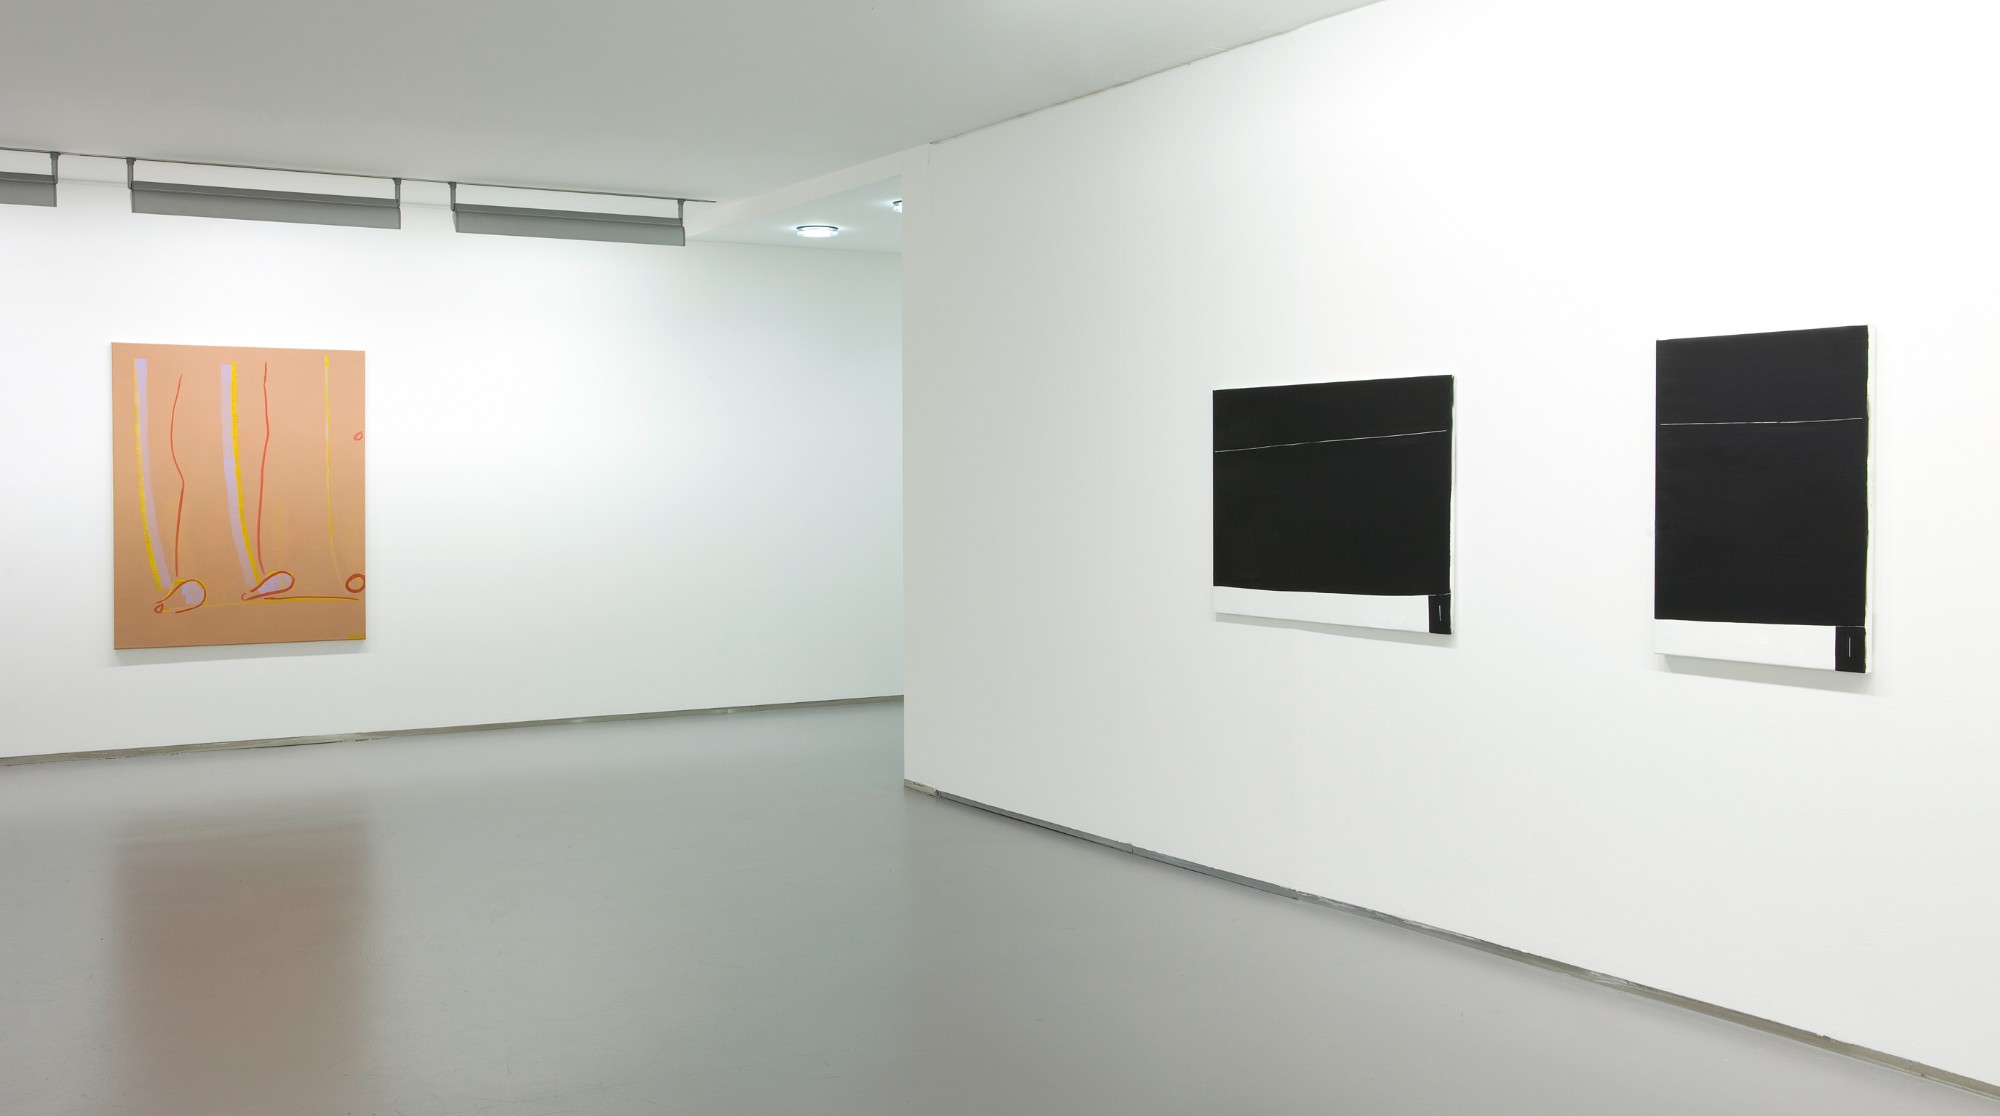 Sein und Zeit, exhibition view, 2014